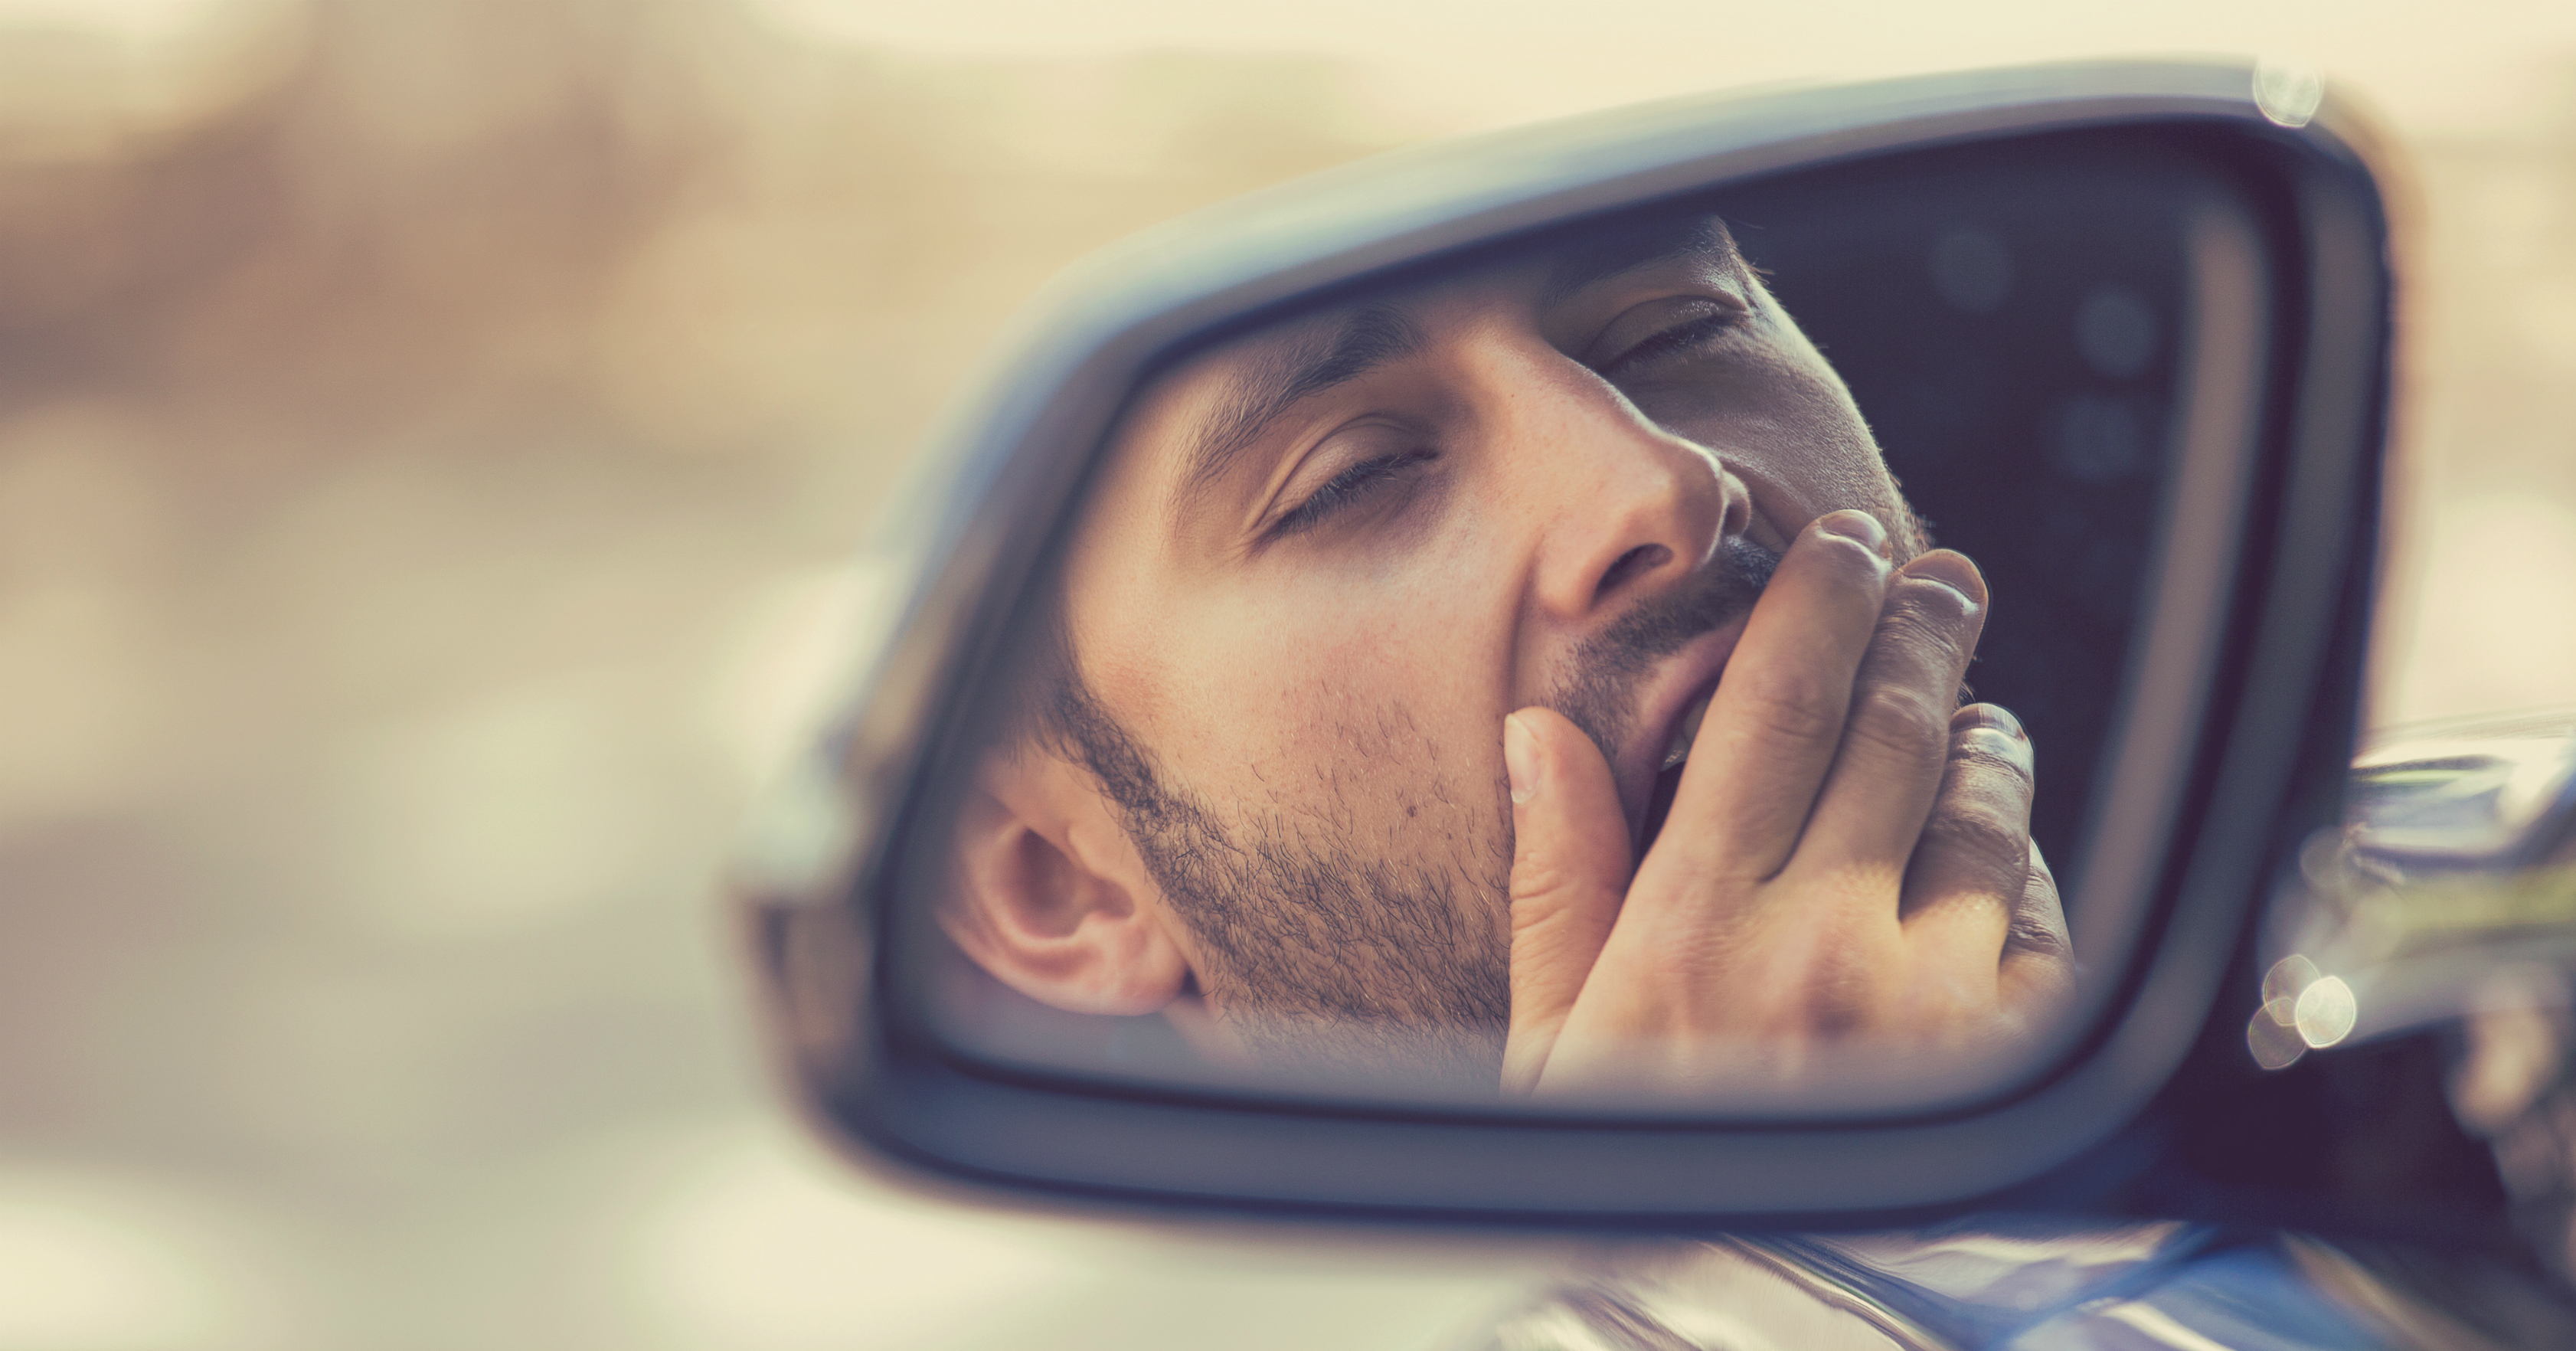 Cansaço e sonolência também estão entre as principais causas de acidente de trabalho